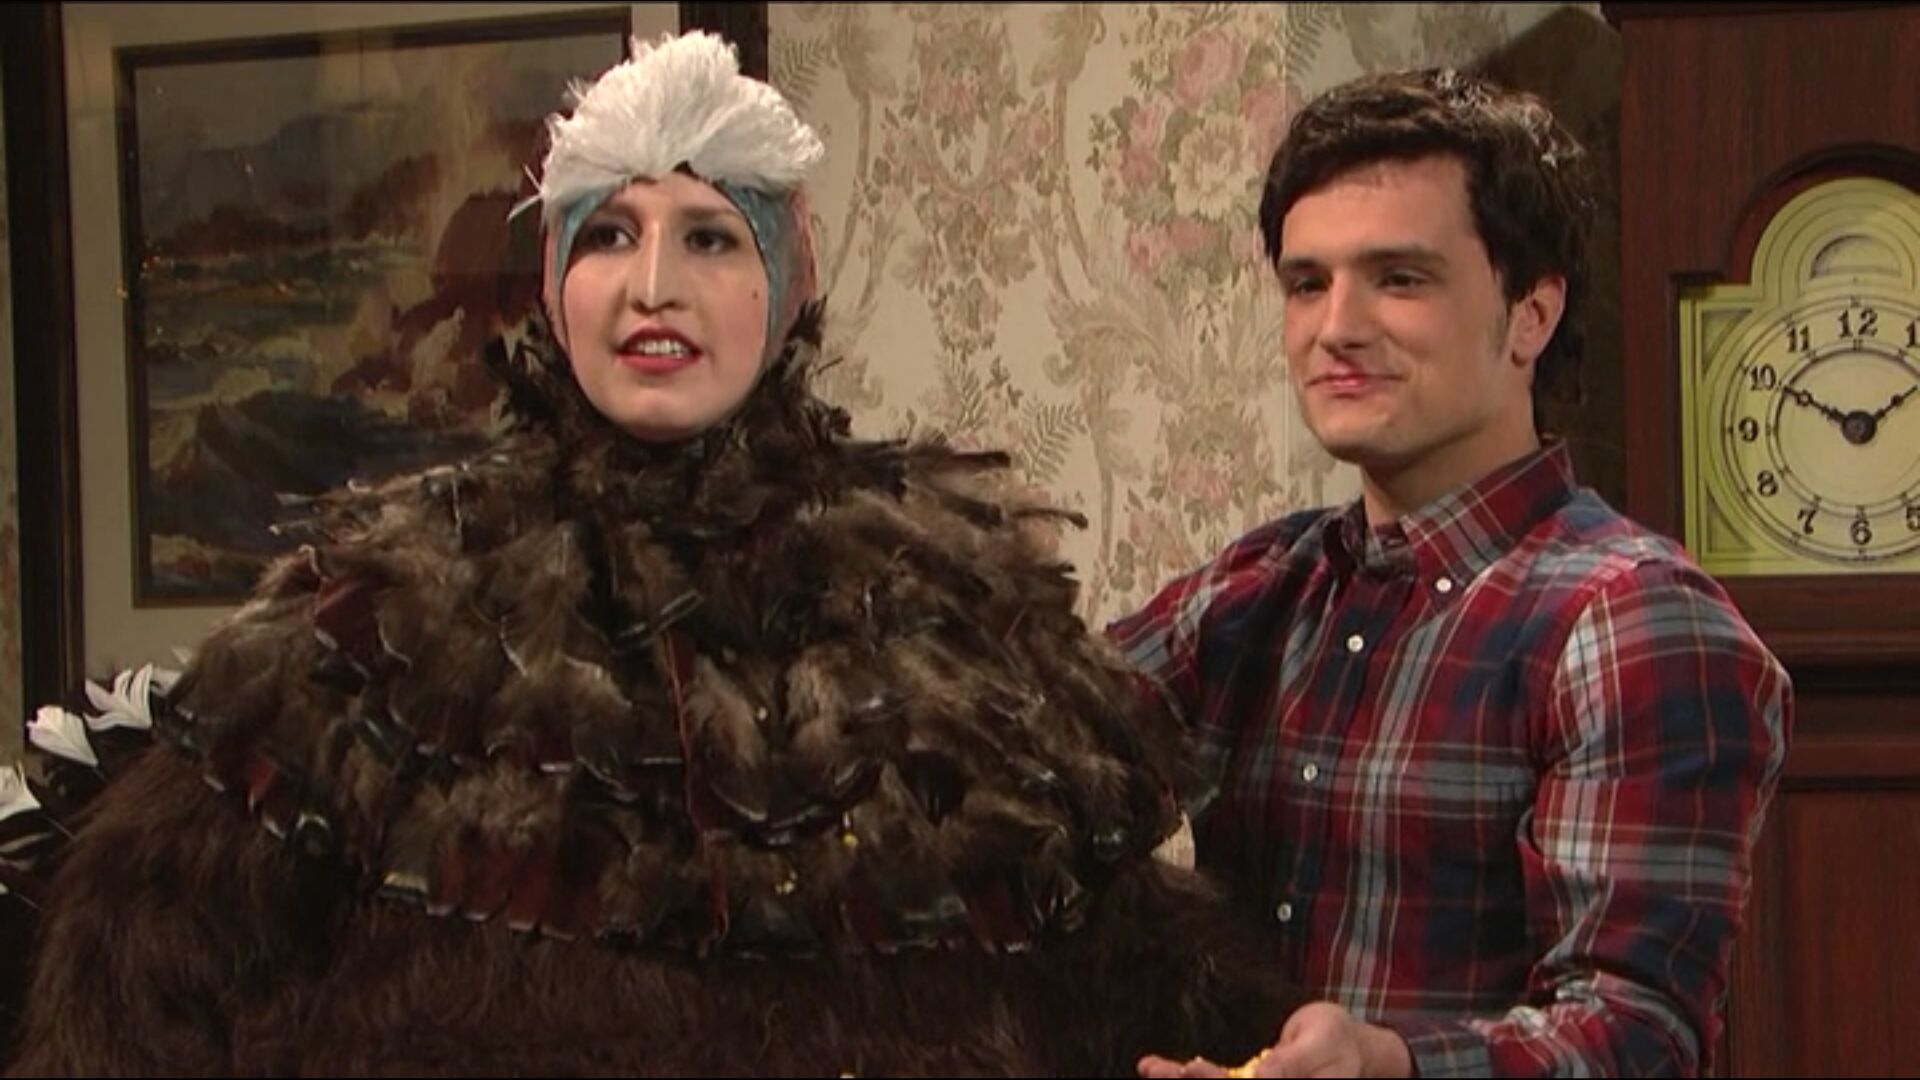 Josh Hutcherson in Saturday Night Live (Season 39)